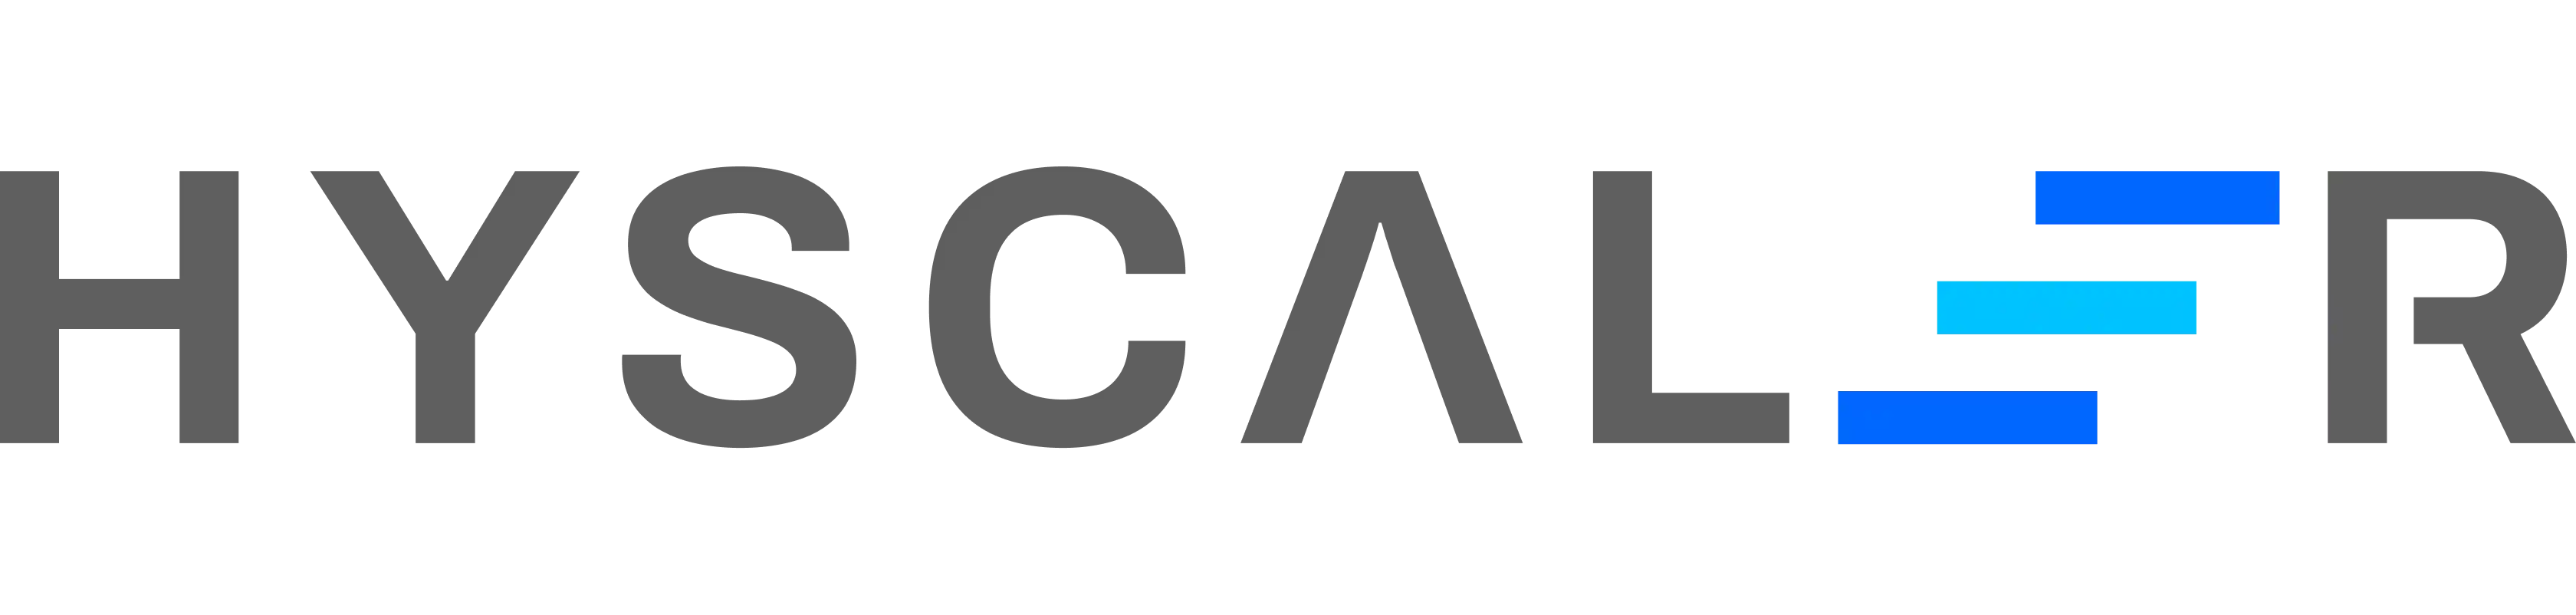 hyscaler-logo-dark-large